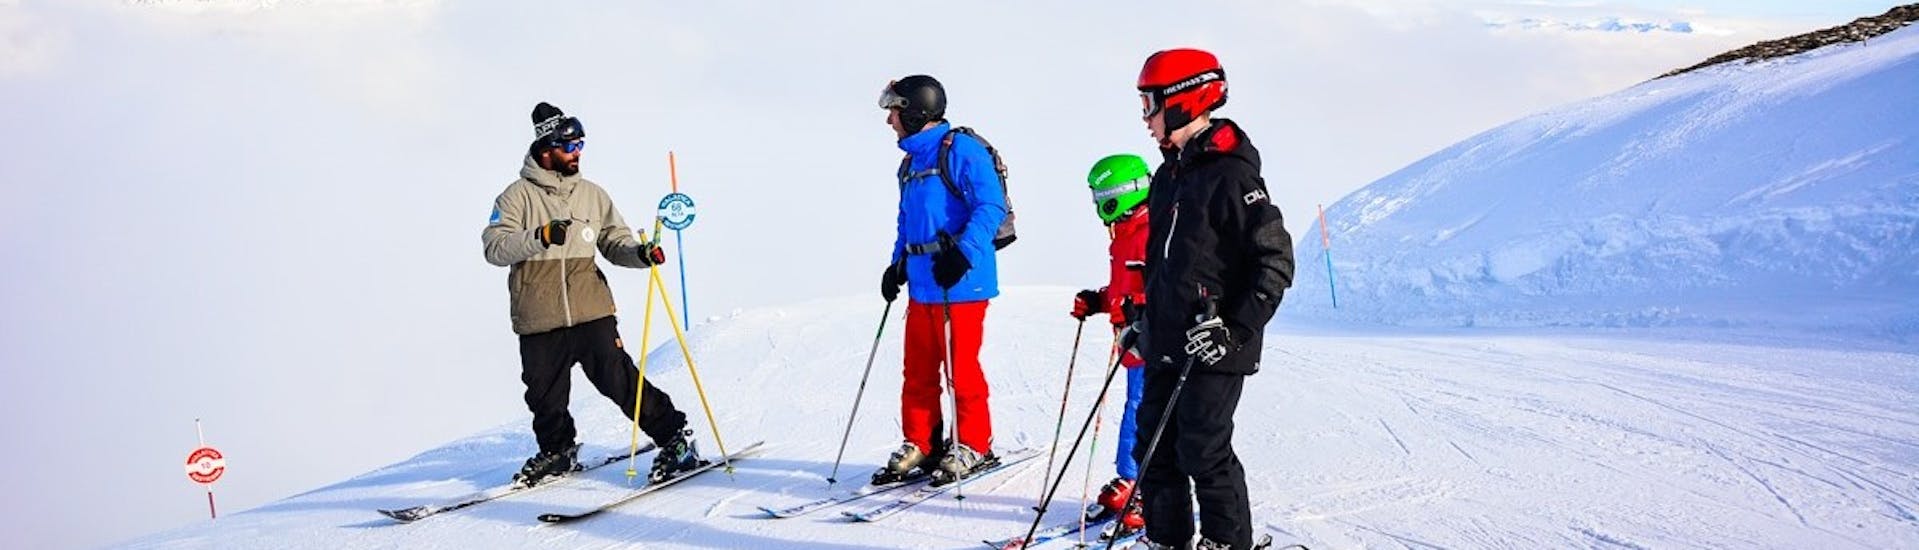 Premier Cours de ski Adultes (dès 15 ans).